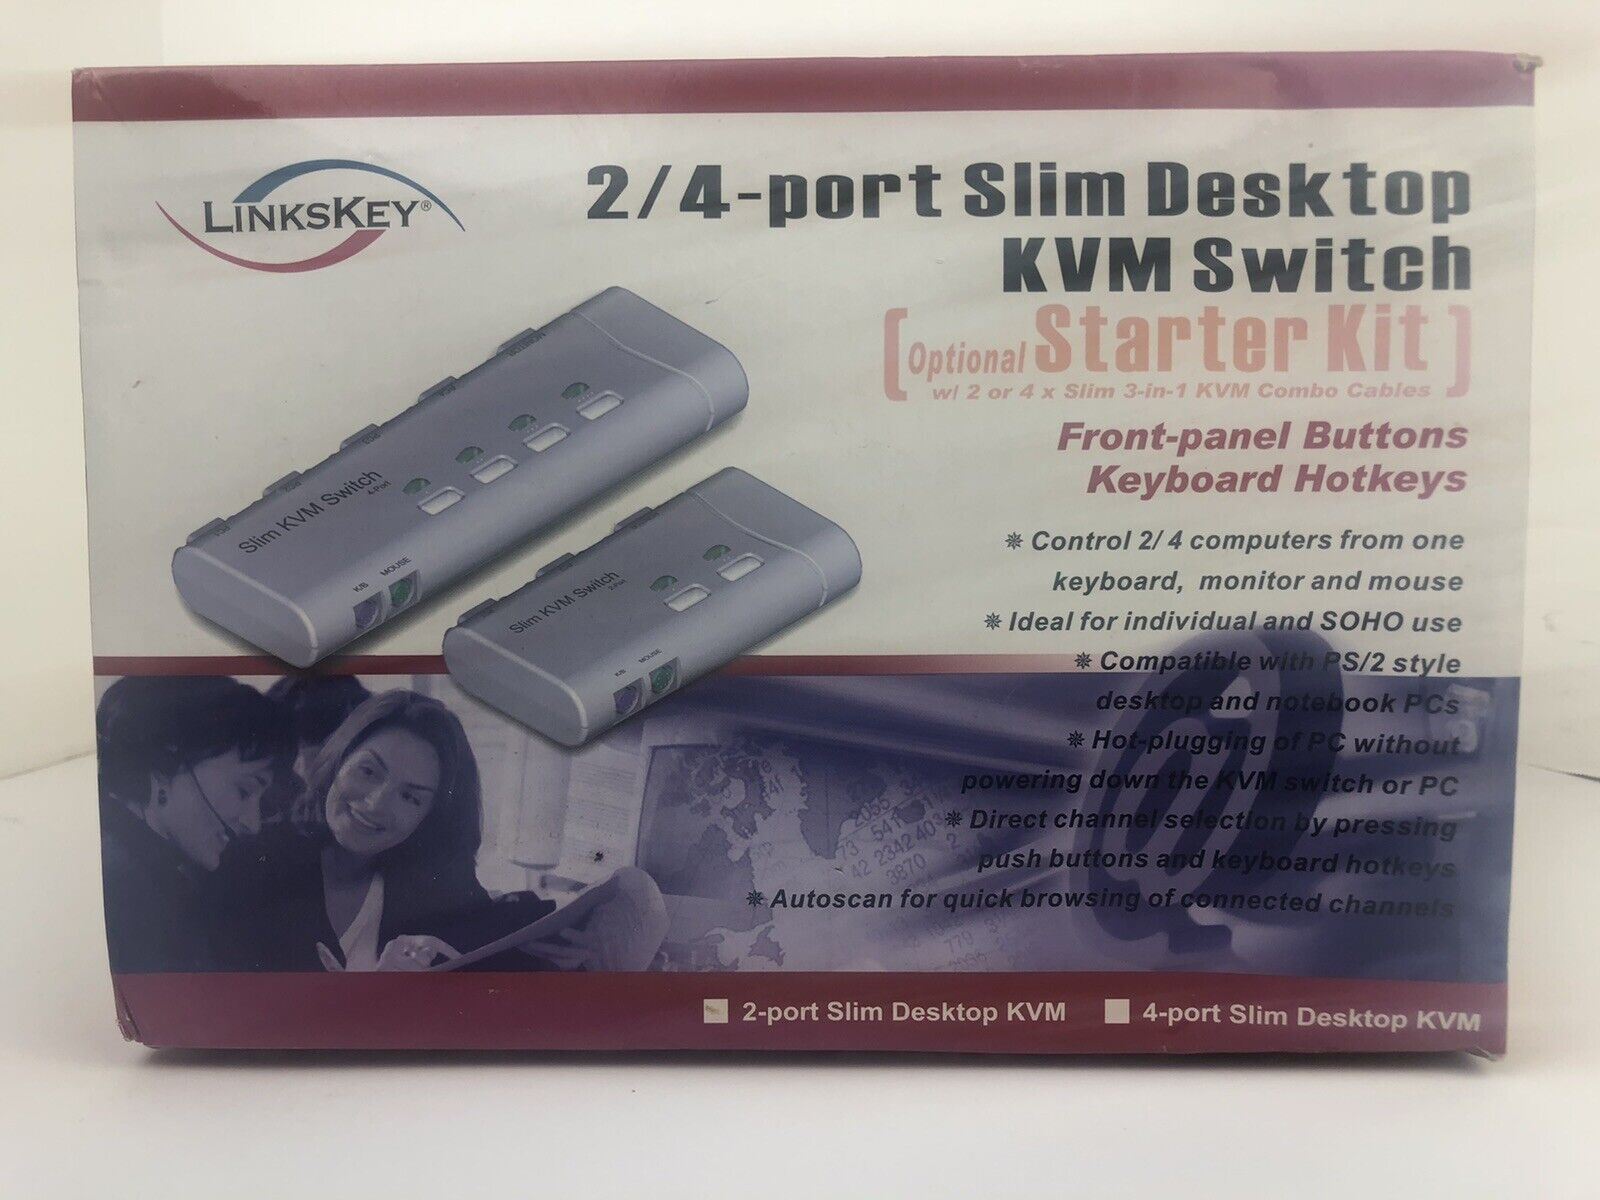 Linkskey LKV-S02SK Slim Desktop KVM Switch  2/4-port Slim Desktop (T5)